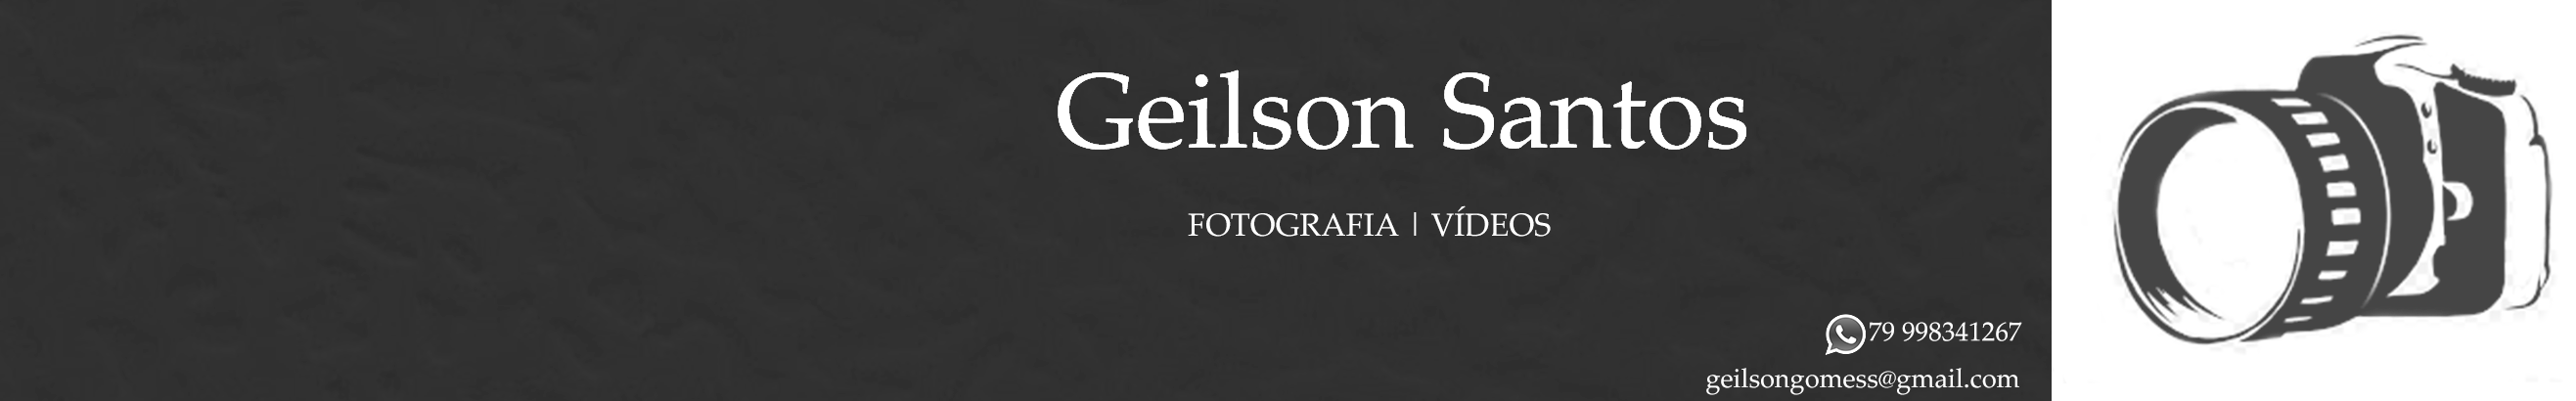 Geilson Santos's profile banner